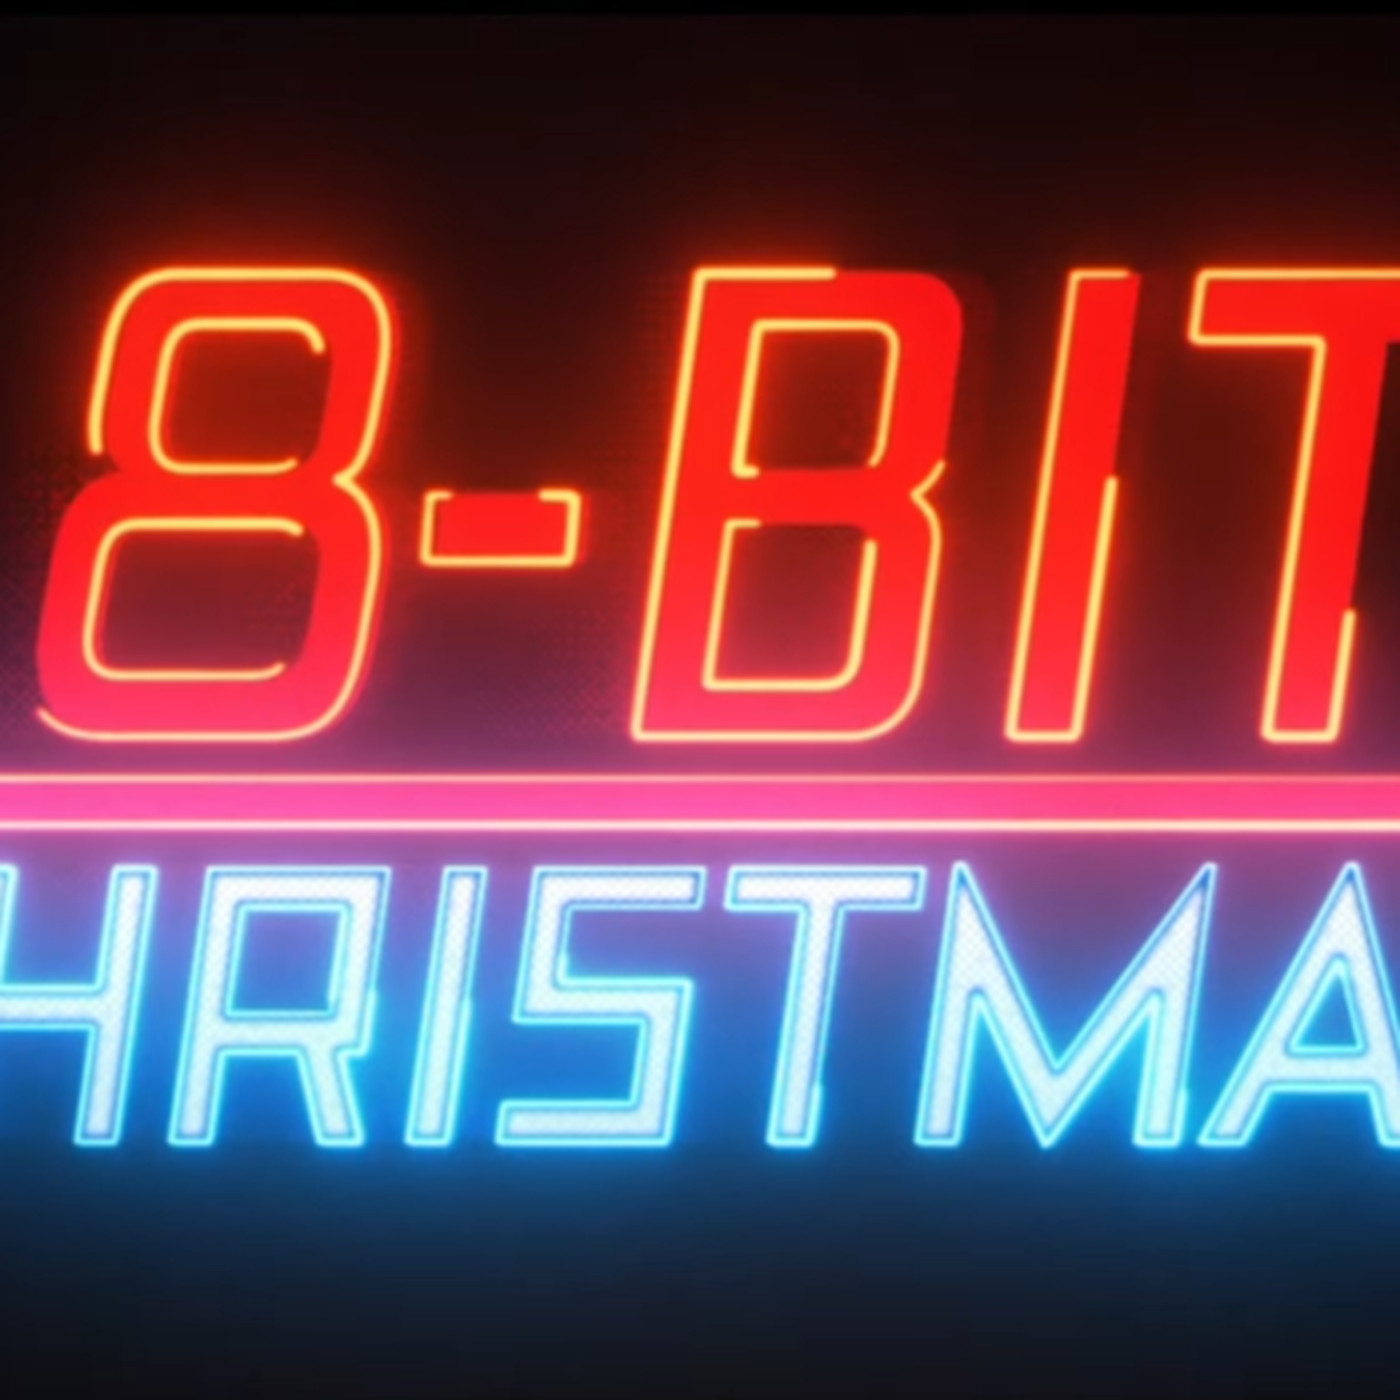 Neil Patrick Harris 8-Bit Christmas Movie Wallpapers